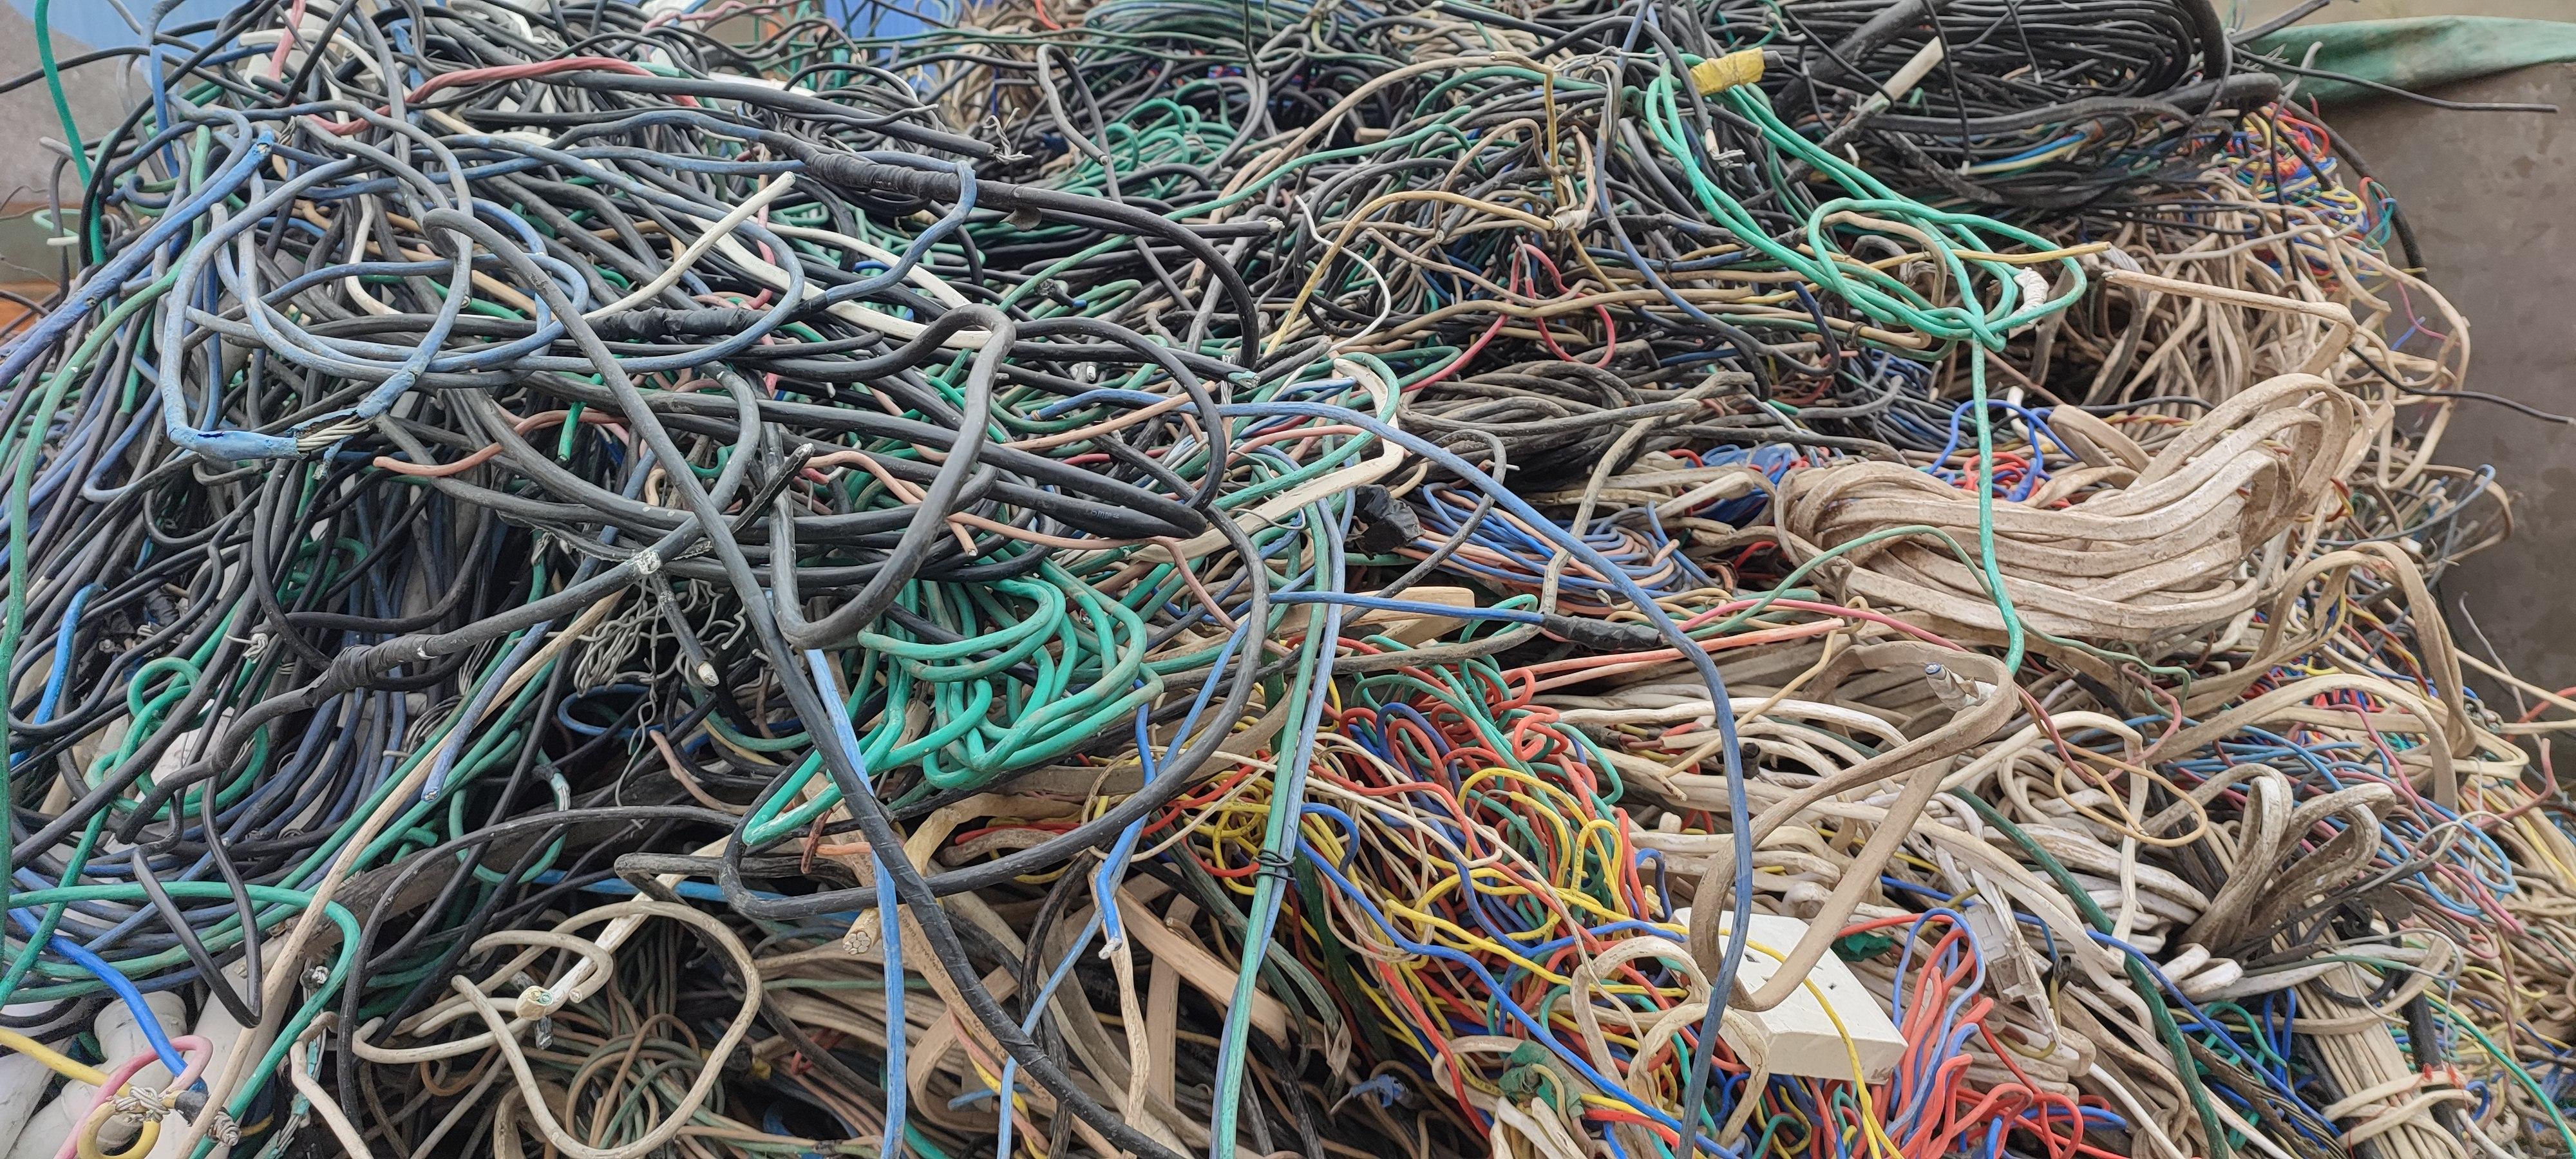 回收的废旧电线电缆如何处理来提升价值